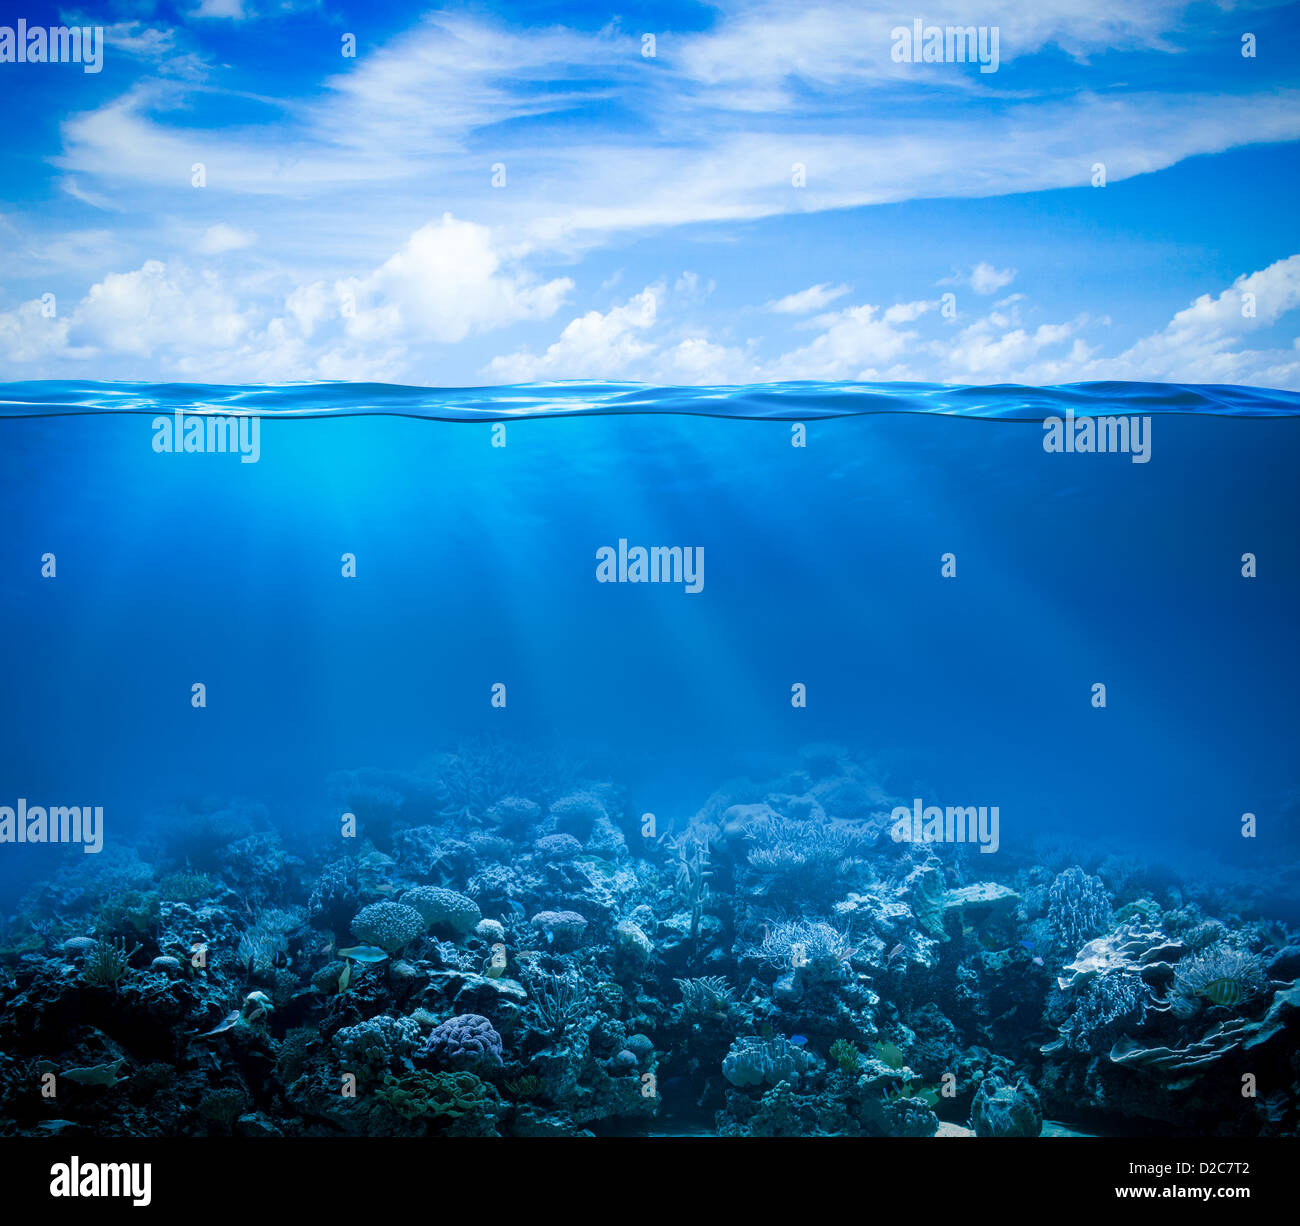 Los fondos marinos de arrecifes de coral submarinos con vista horizonte dividido por la superficie del agua y la línea de flotación Foto de stock